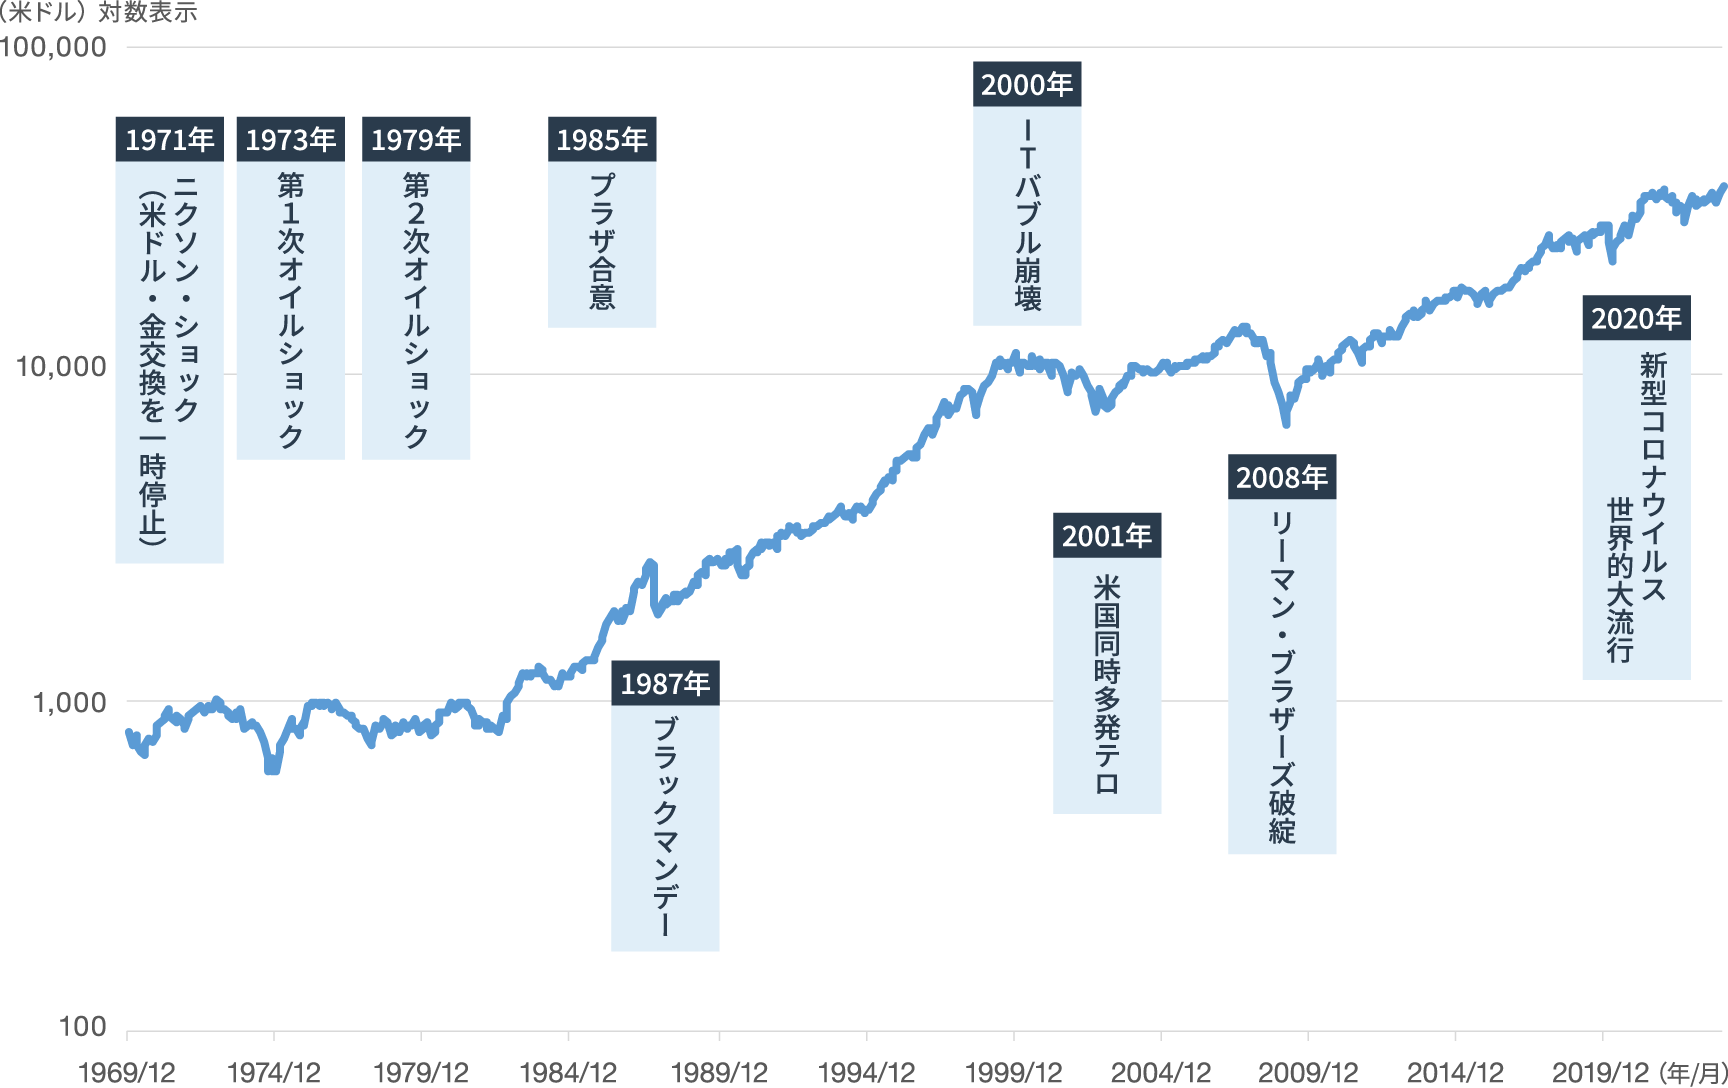 ニューヨークダウ平均株価の推移の図